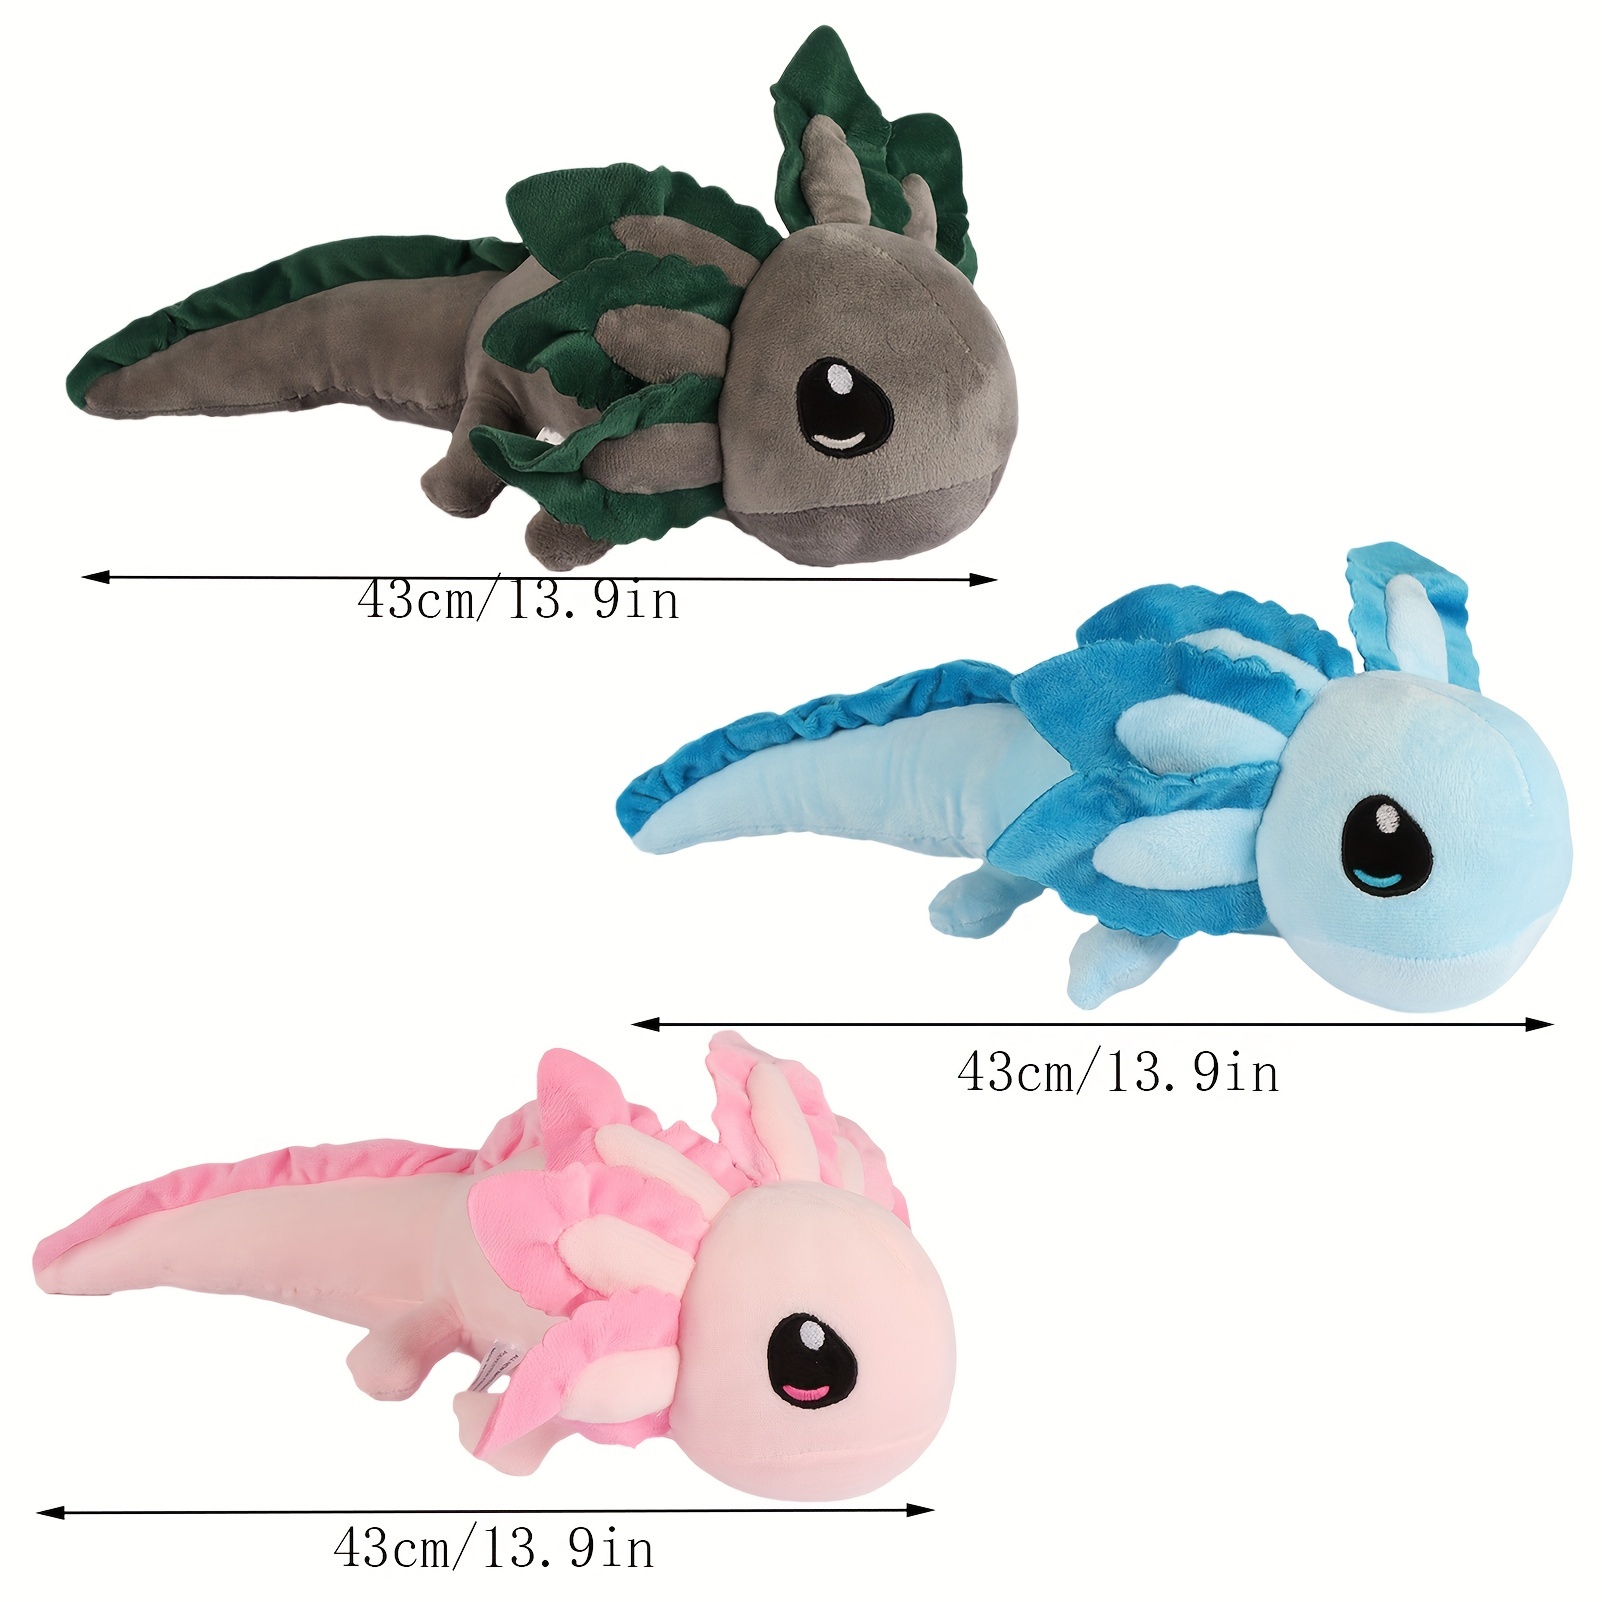 Love You Alotl Axolotl Stuffed Animal Gift Set